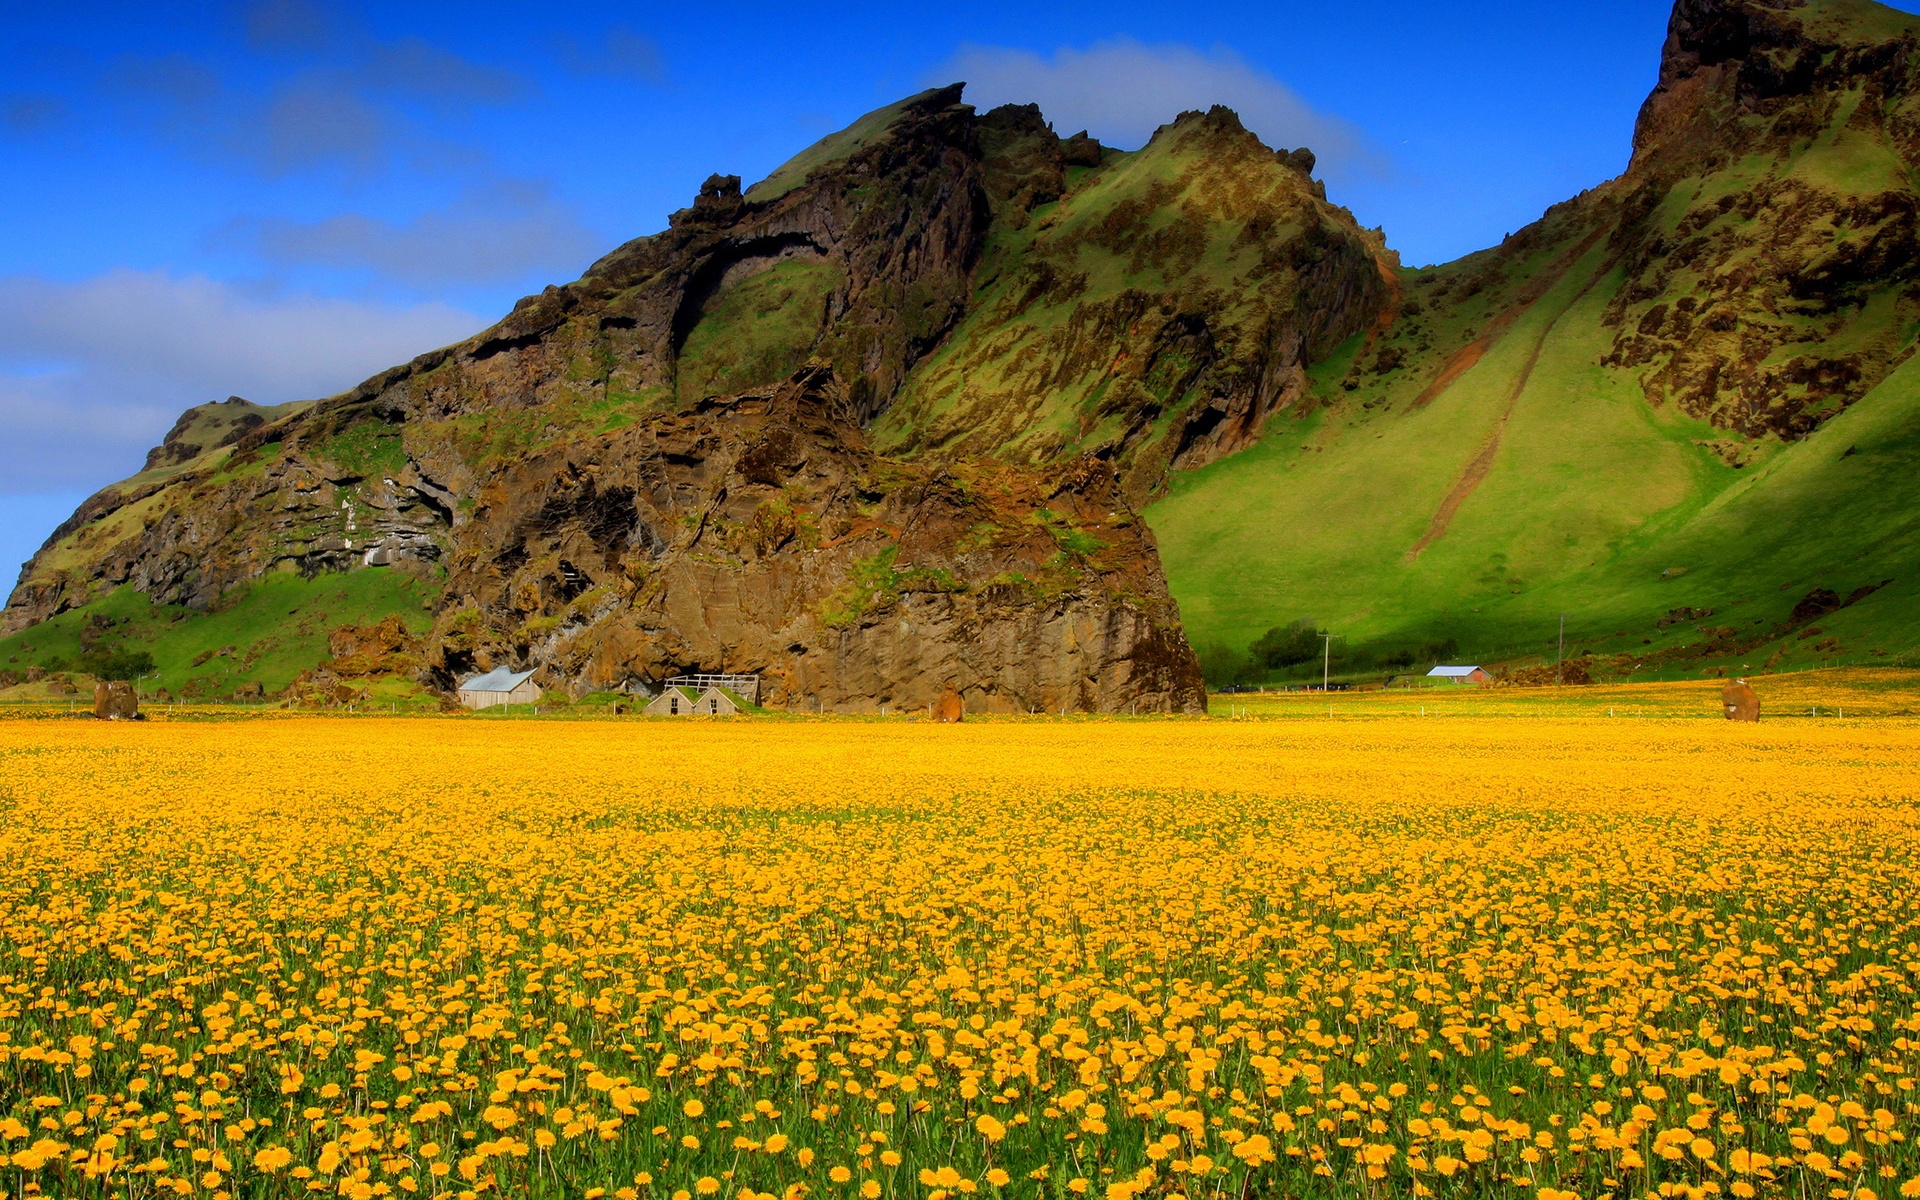 yellow flower field